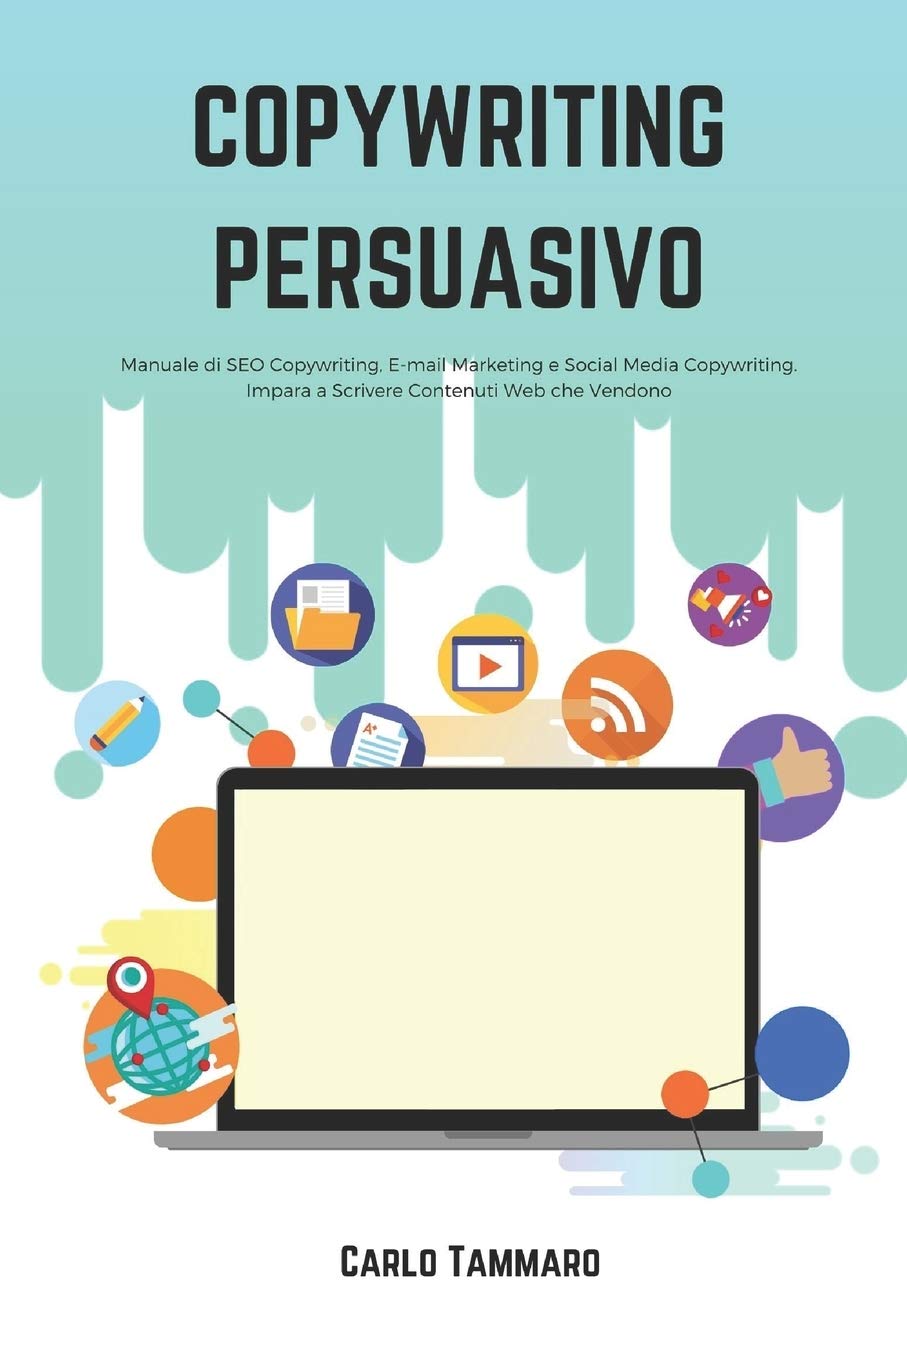 Copywriting Persuasivo: Manuale di SEO Copywriting, E-mail Marketing e Social Media Copywriting.